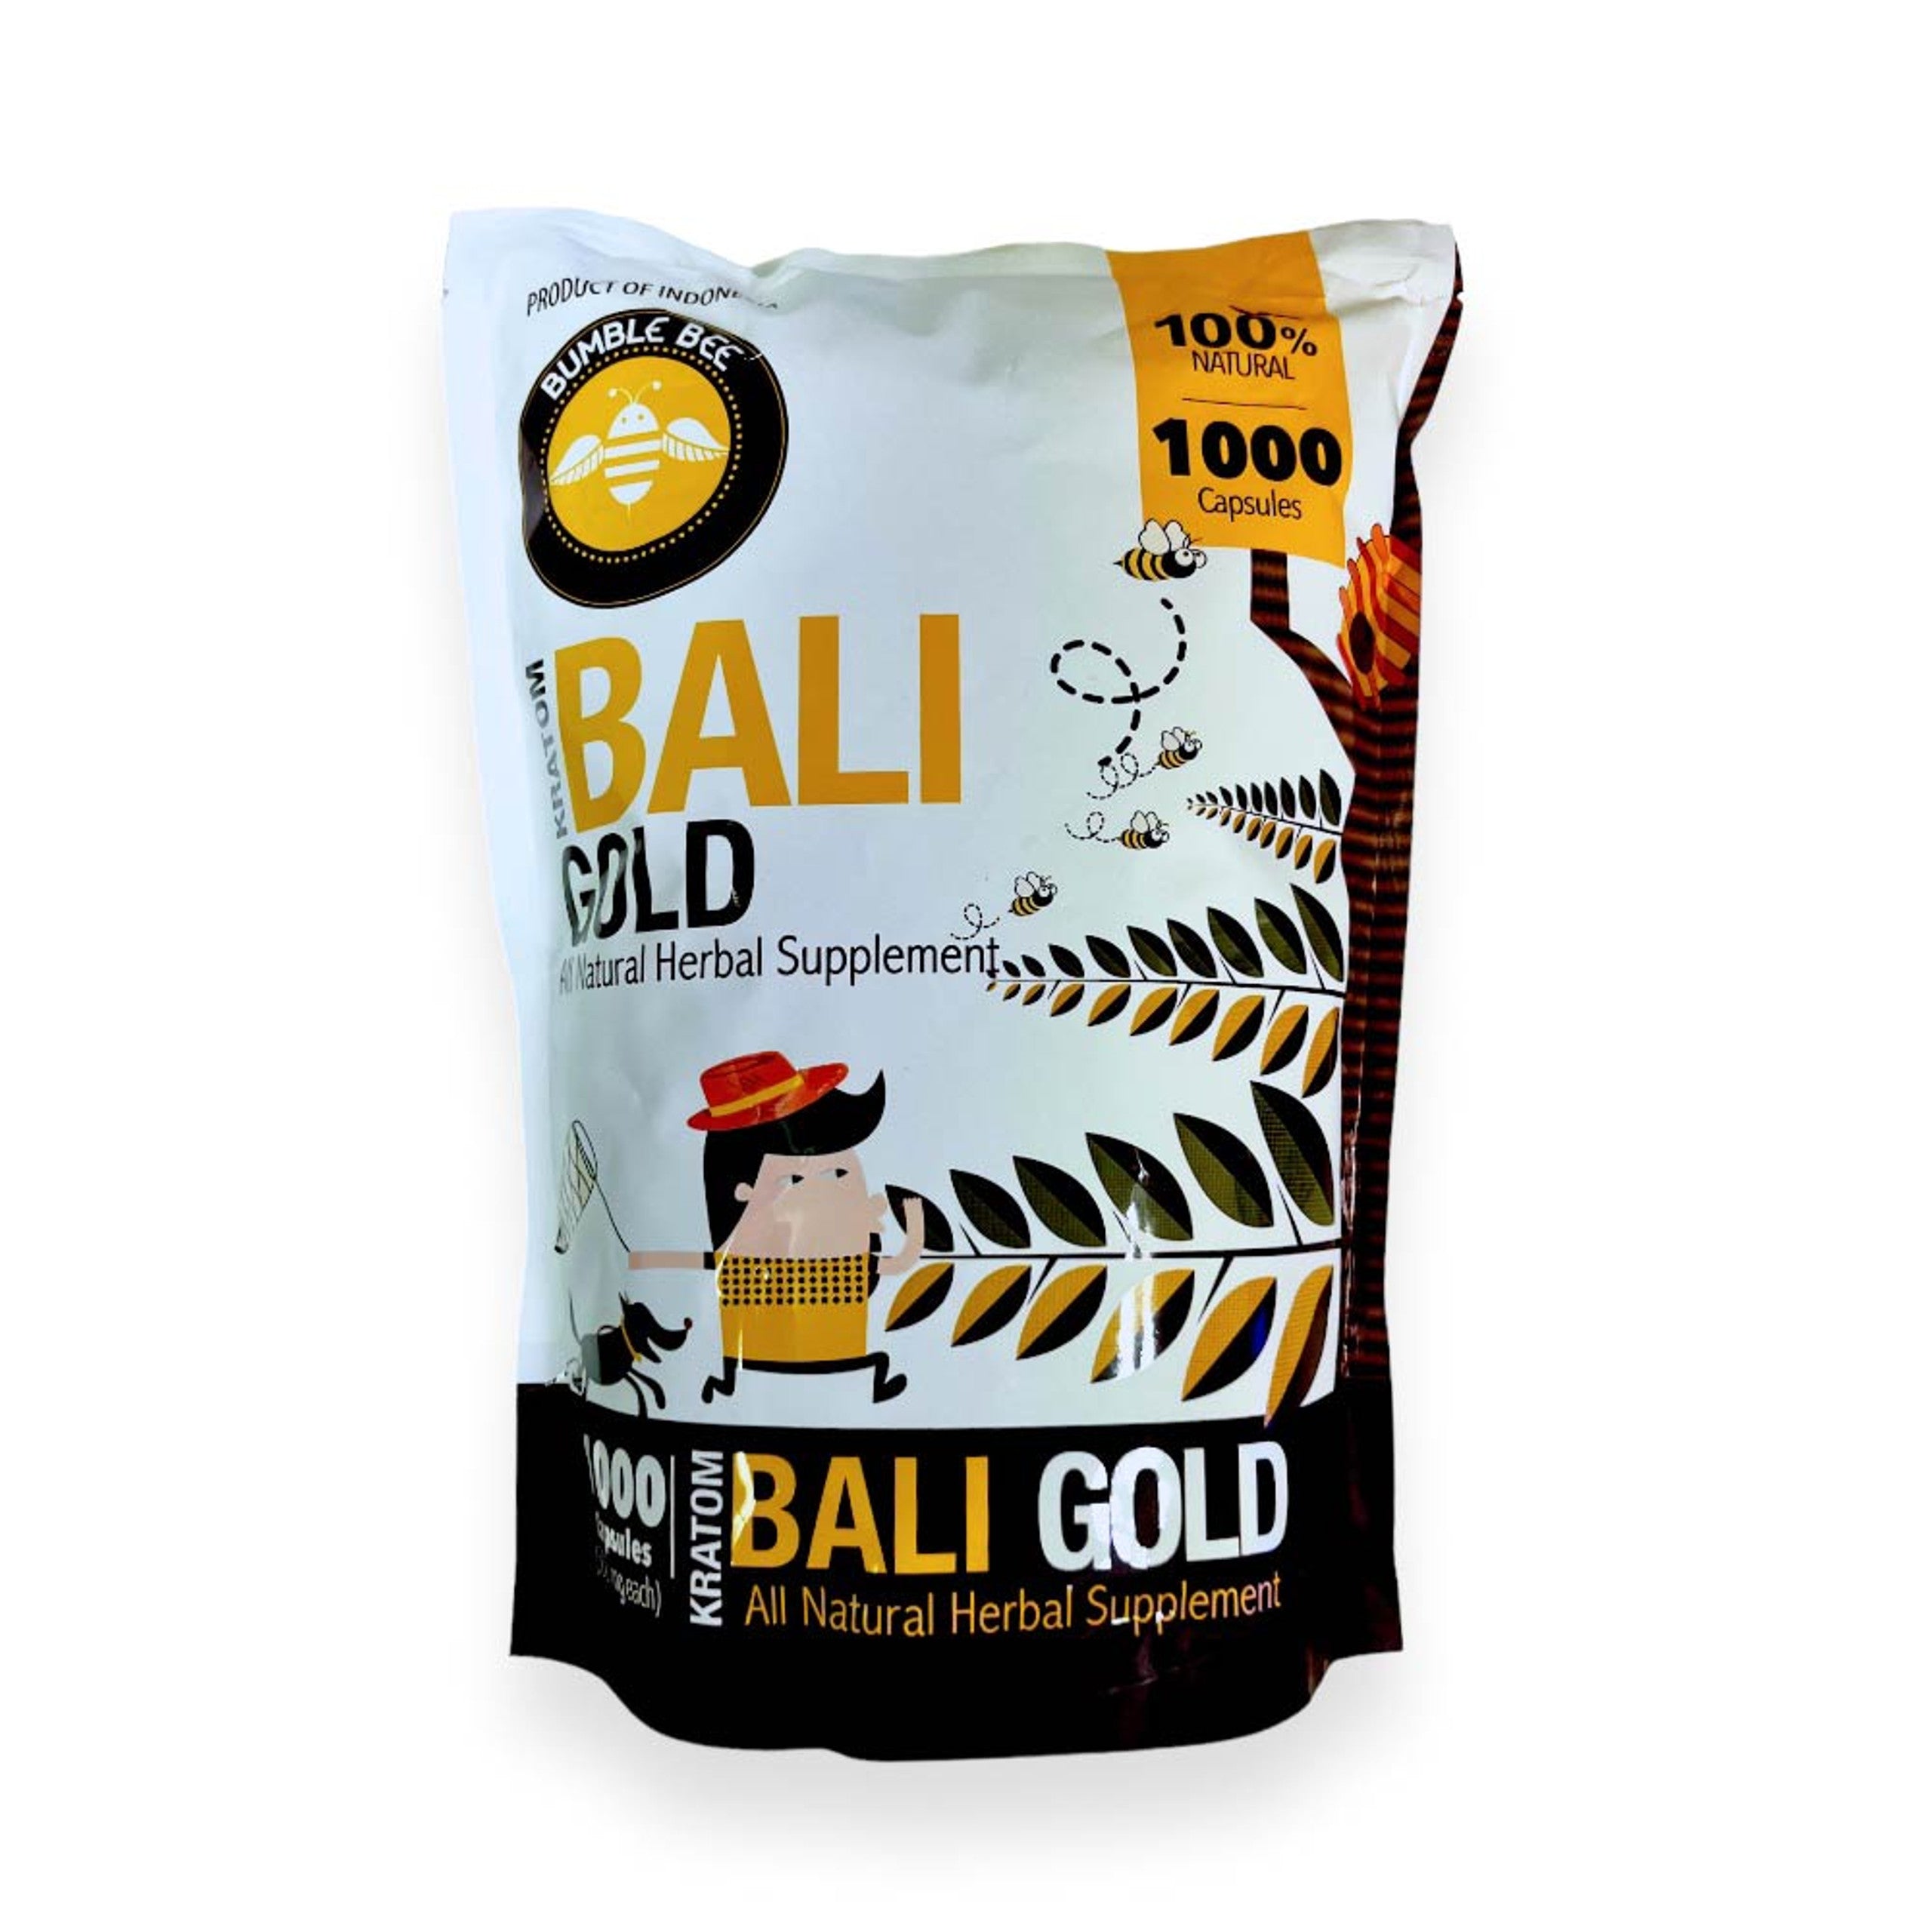 BALI GOLD BUMBLE BEE KRATOM | 1000 CAPSULES